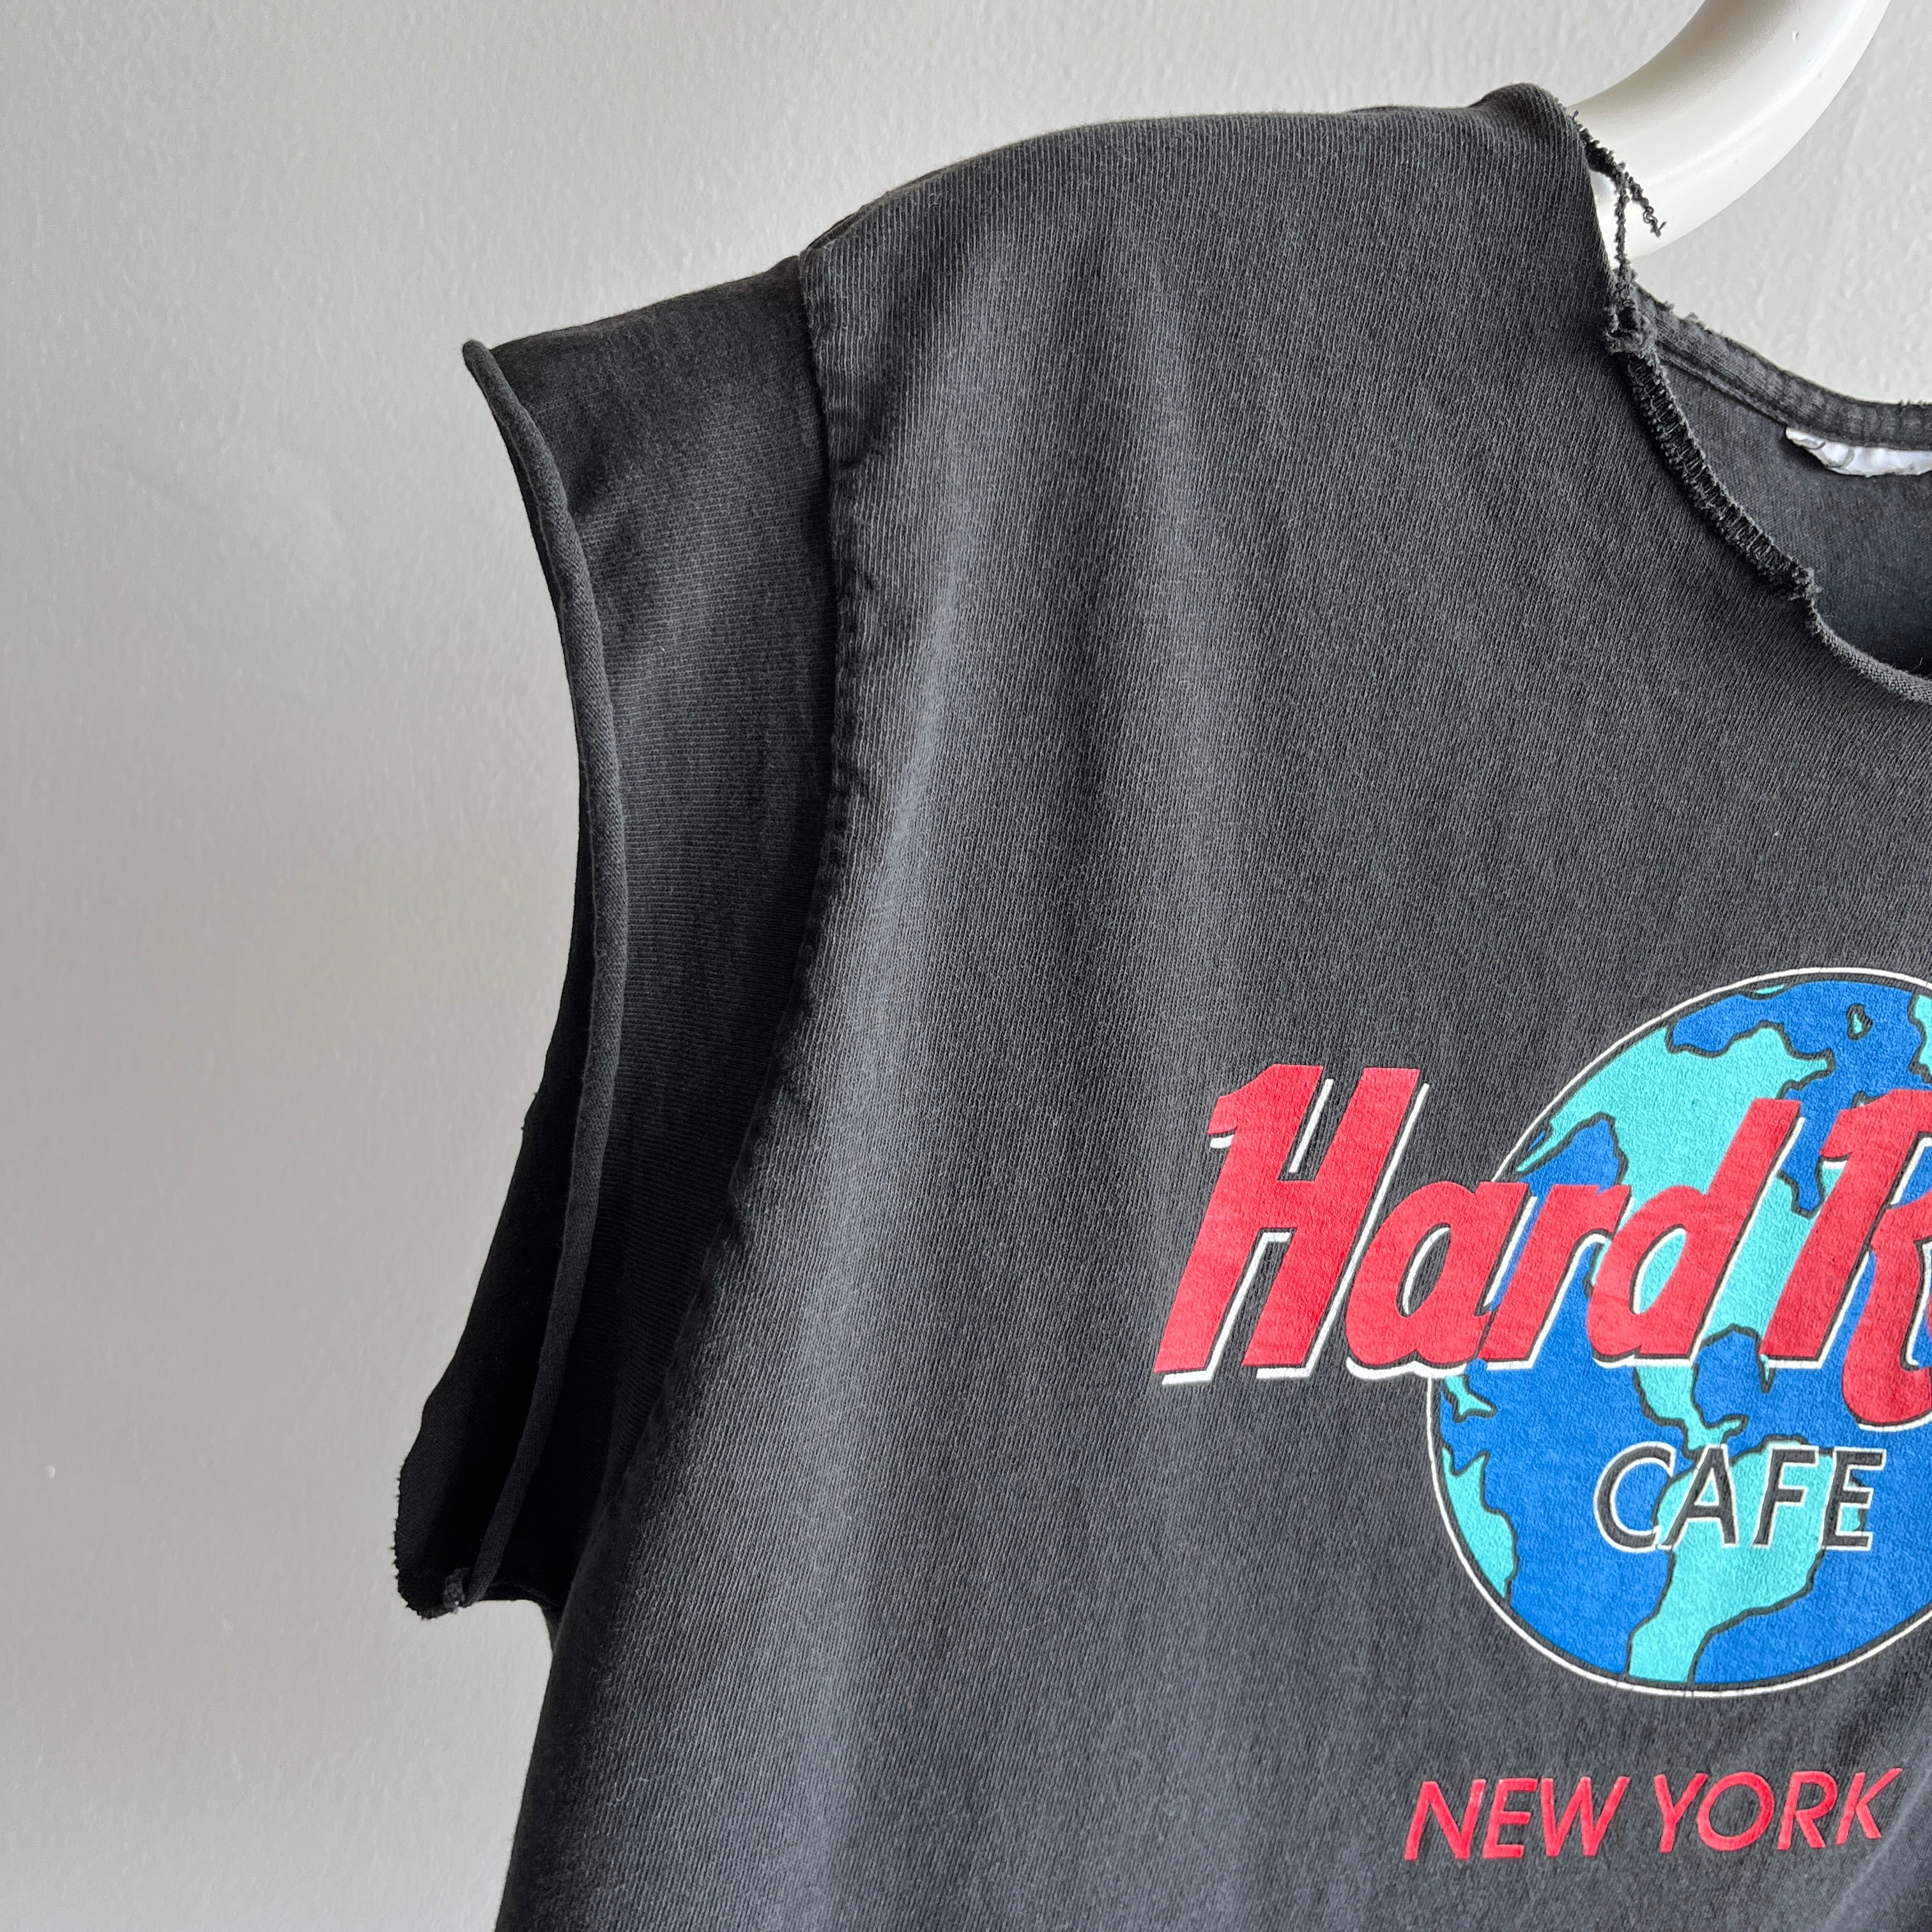 1980s DIY Hard Rock New York Best Cut T-Shirt